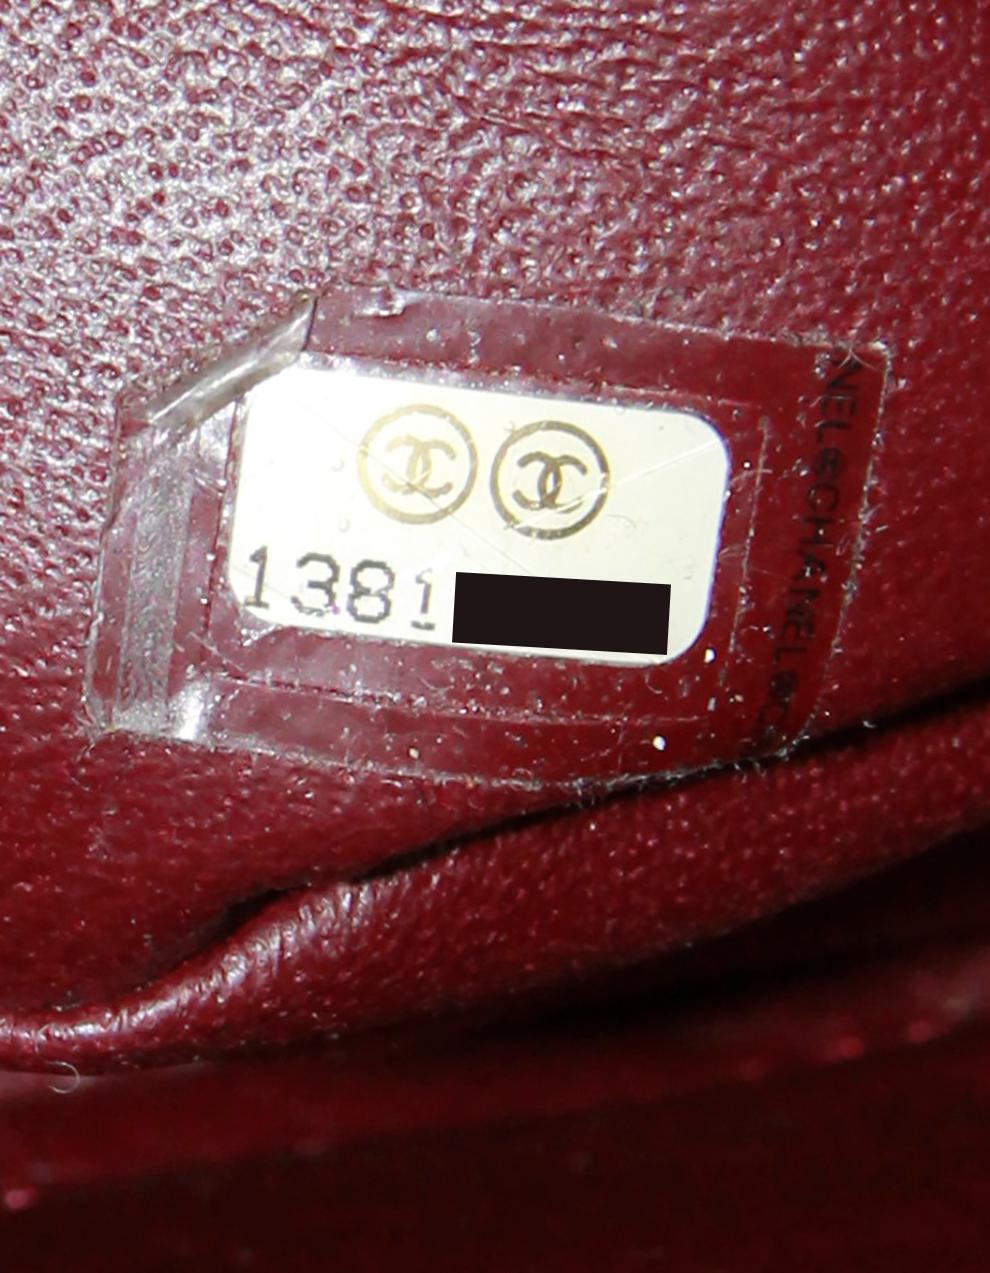 Chanel Schwarzes Lammleder Gesteppte Maxi-Tasche mit Einzelklappe

Hergestellt in: Italien
Produktionsjahr: 2009-2010
Farbe: Schwarz
Hardware: Silvertone
Materialien: Lammfell Leder
Innenfutter: Burgunderfarbenes Leder
Verschluss/Öffnung: Klappe